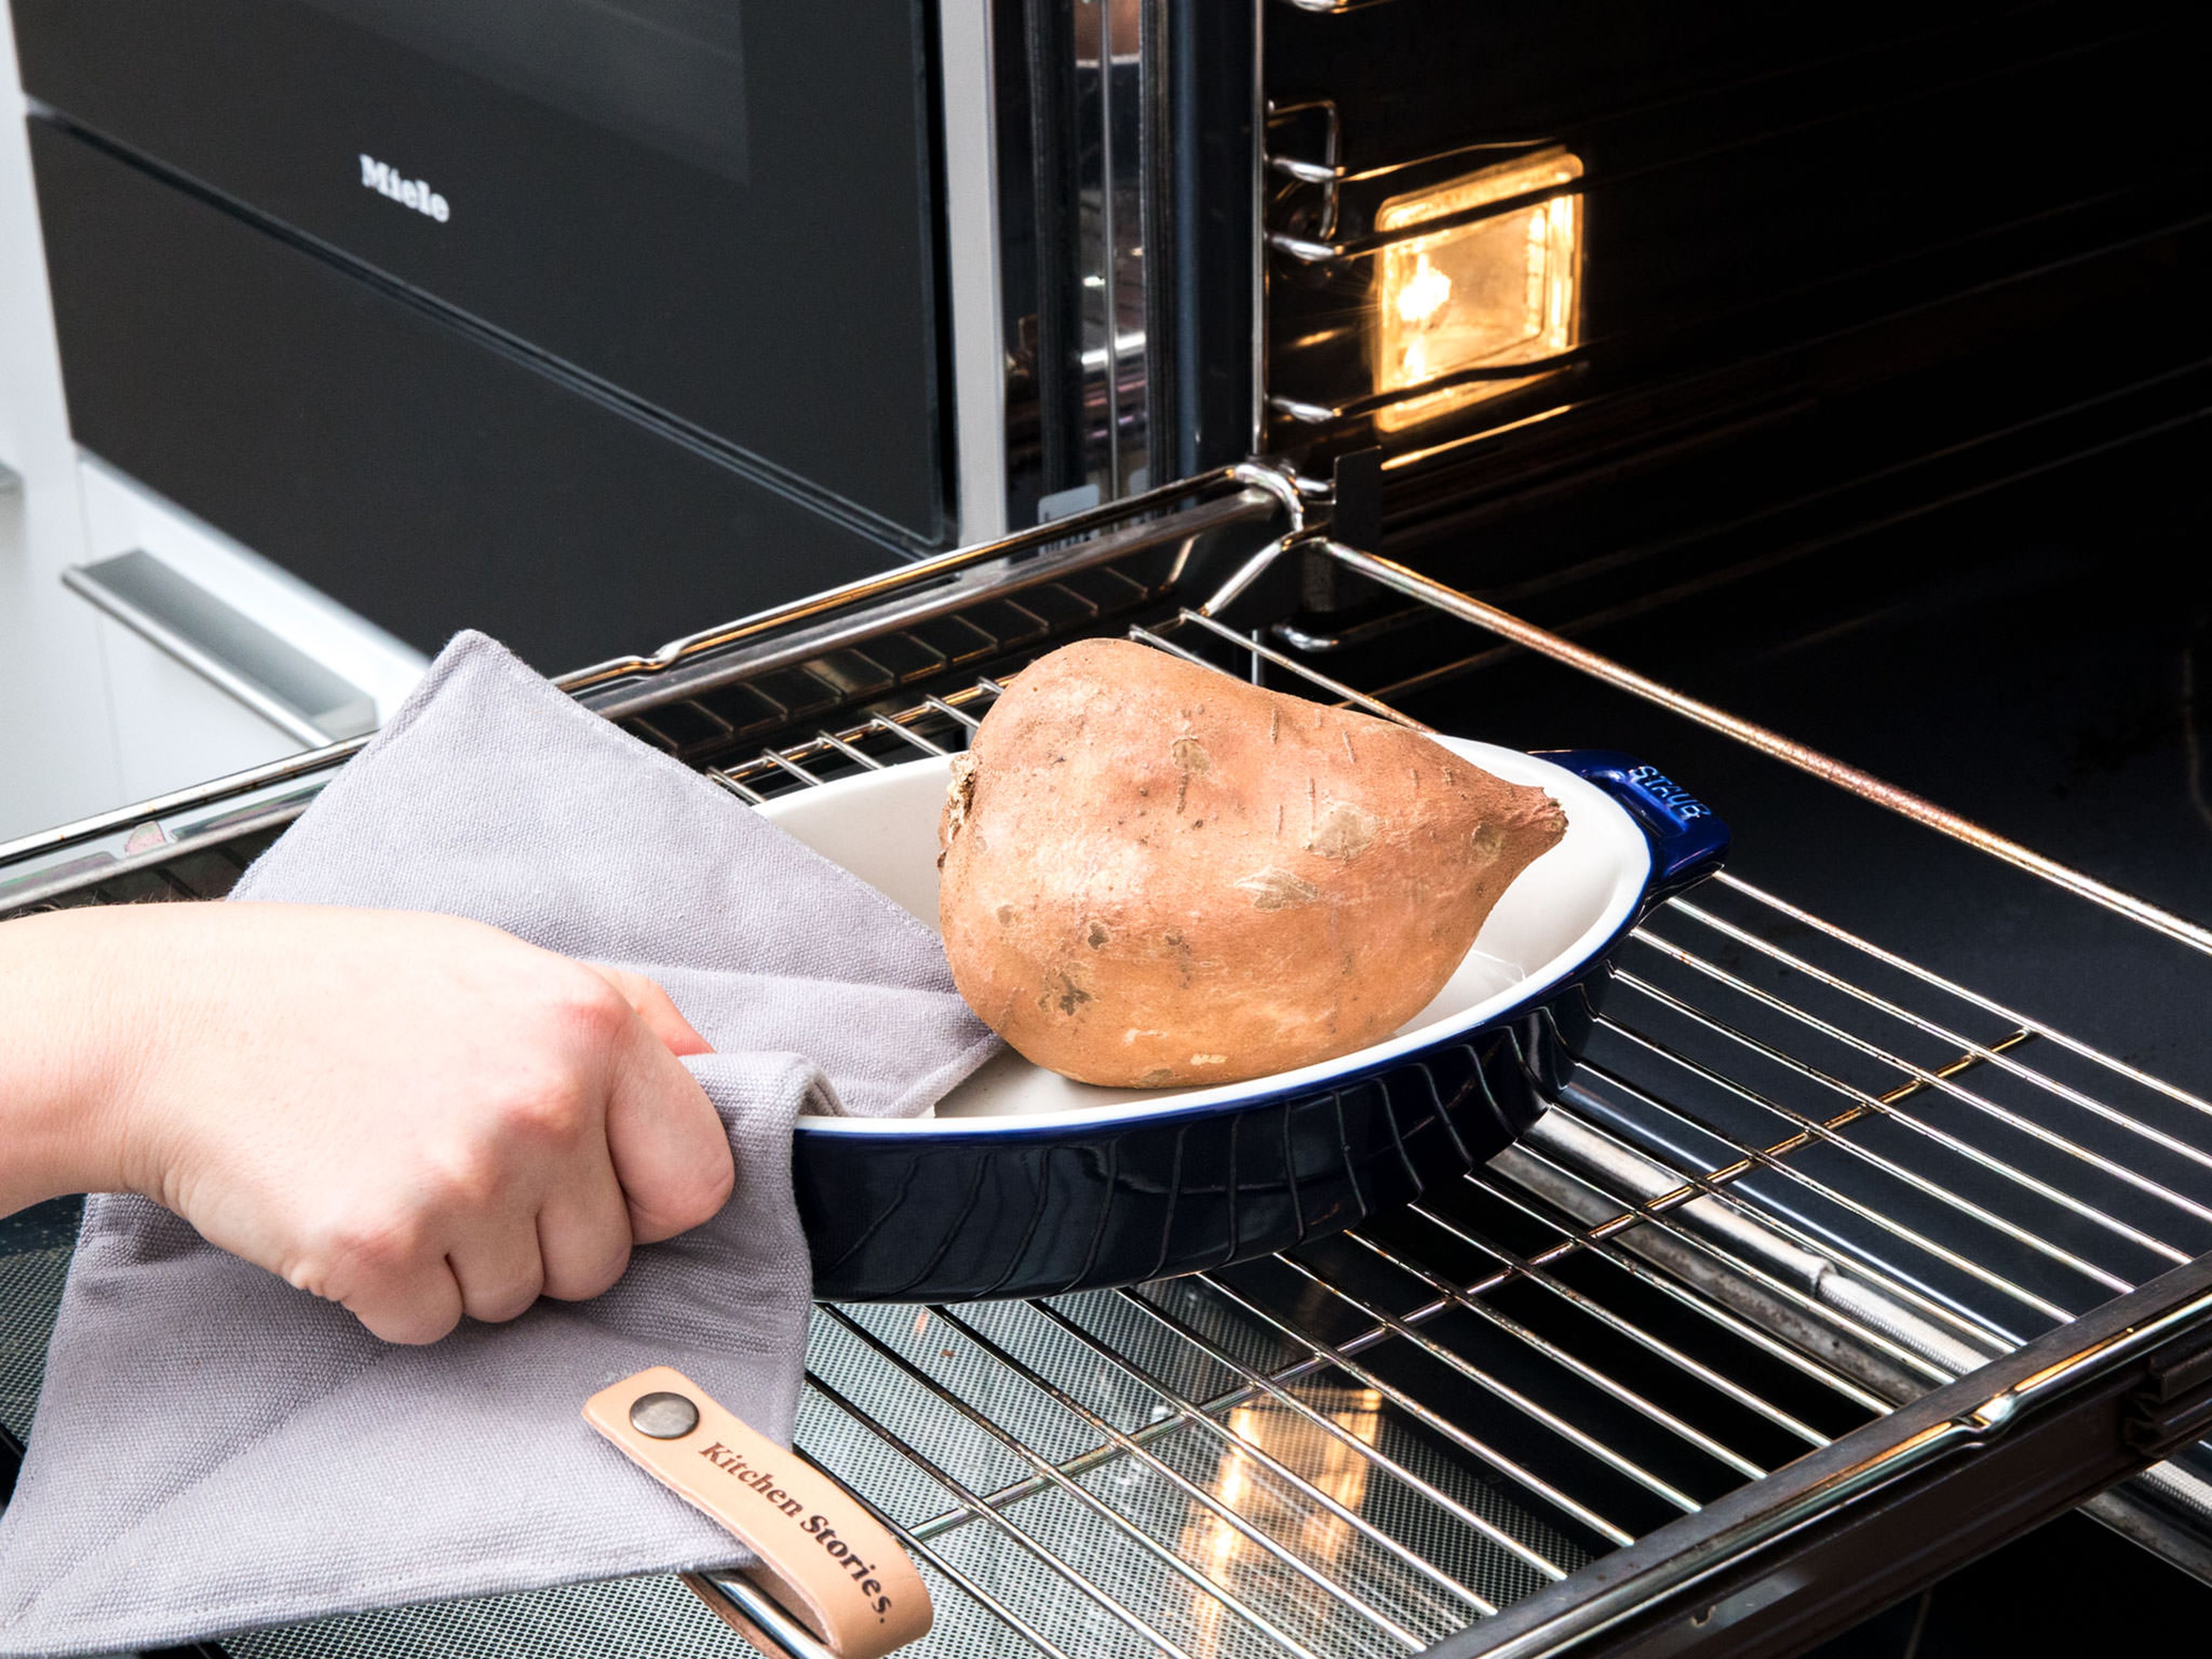 Backofen auf 175°C vorheizen. Eine Springform mit Backpapier auslegen. Süßkartoffel ungeschält in eine Auflaufform legen und für ca. 1 Std. backen.